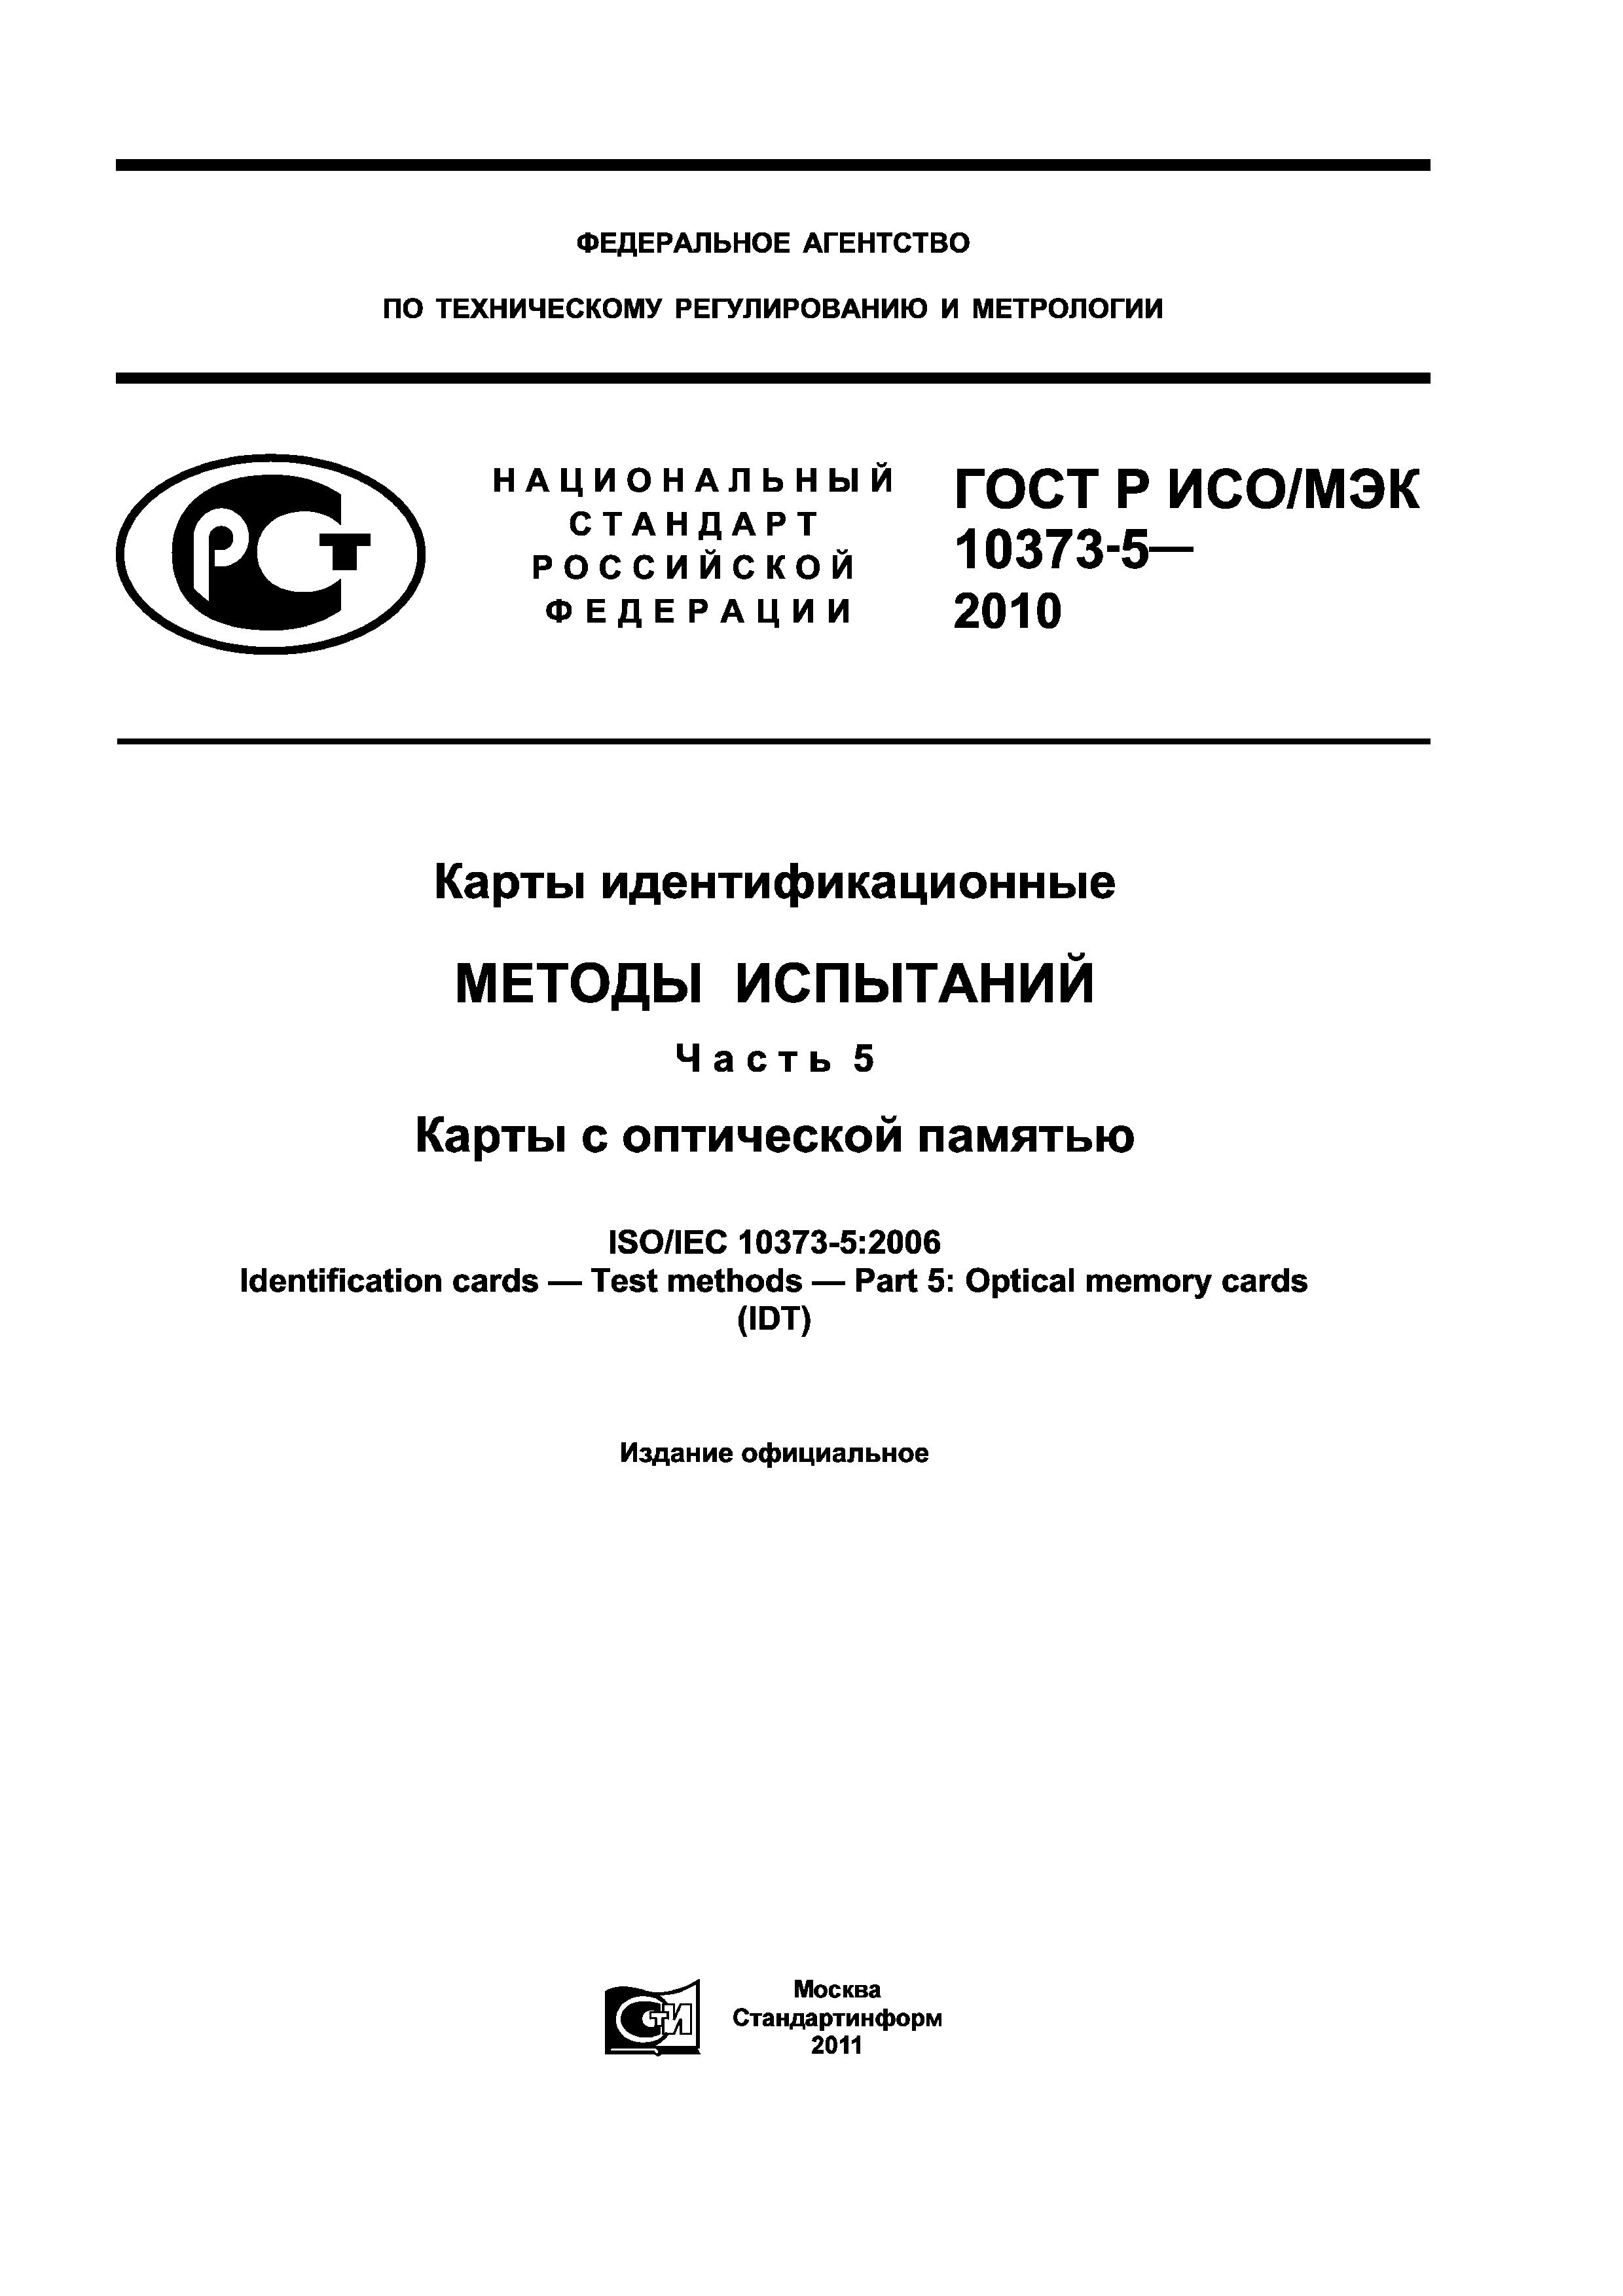 ГОСТ Р ИСО/МЭК 10373-5-2010